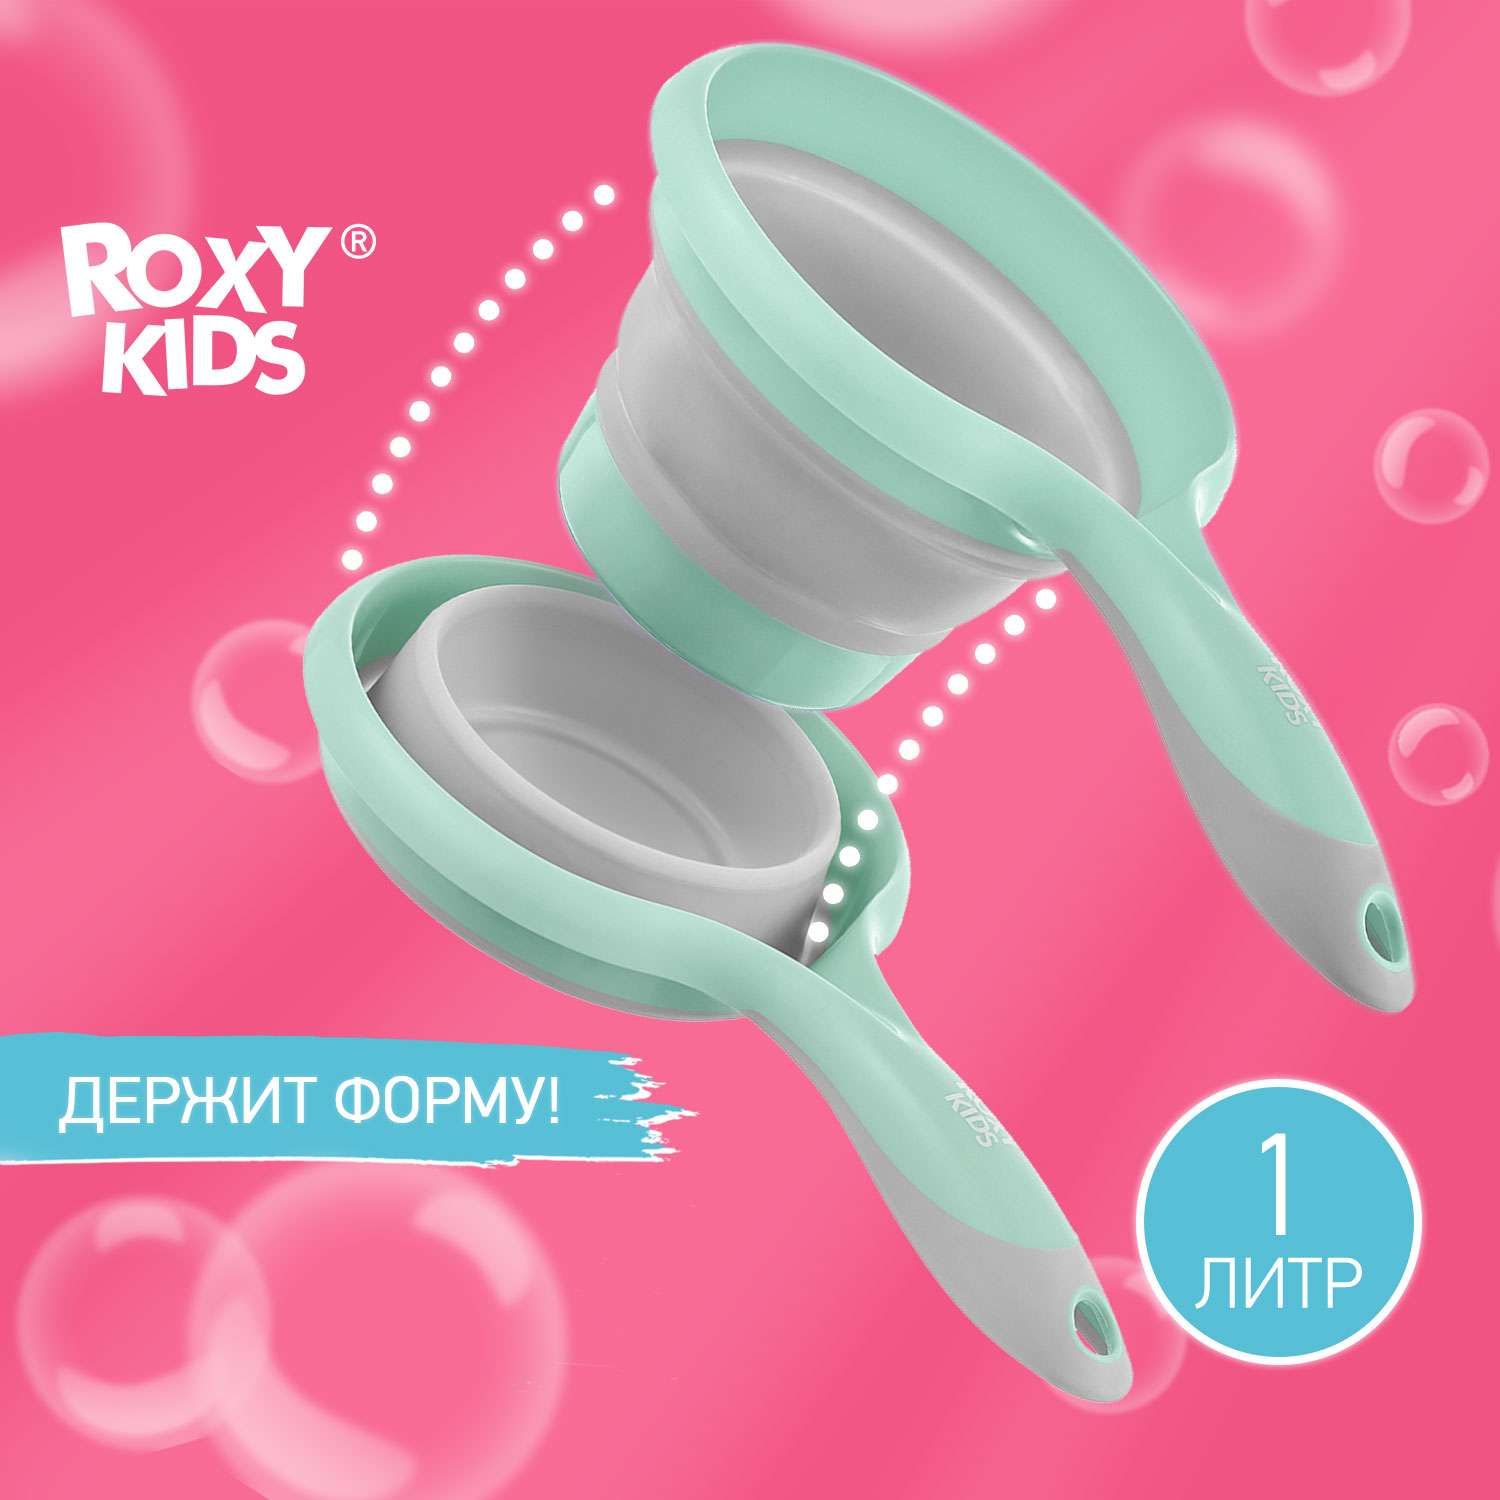 Ковш детский складной ROXY-KIDS для купания малышей цвет мятно серый - фото 1